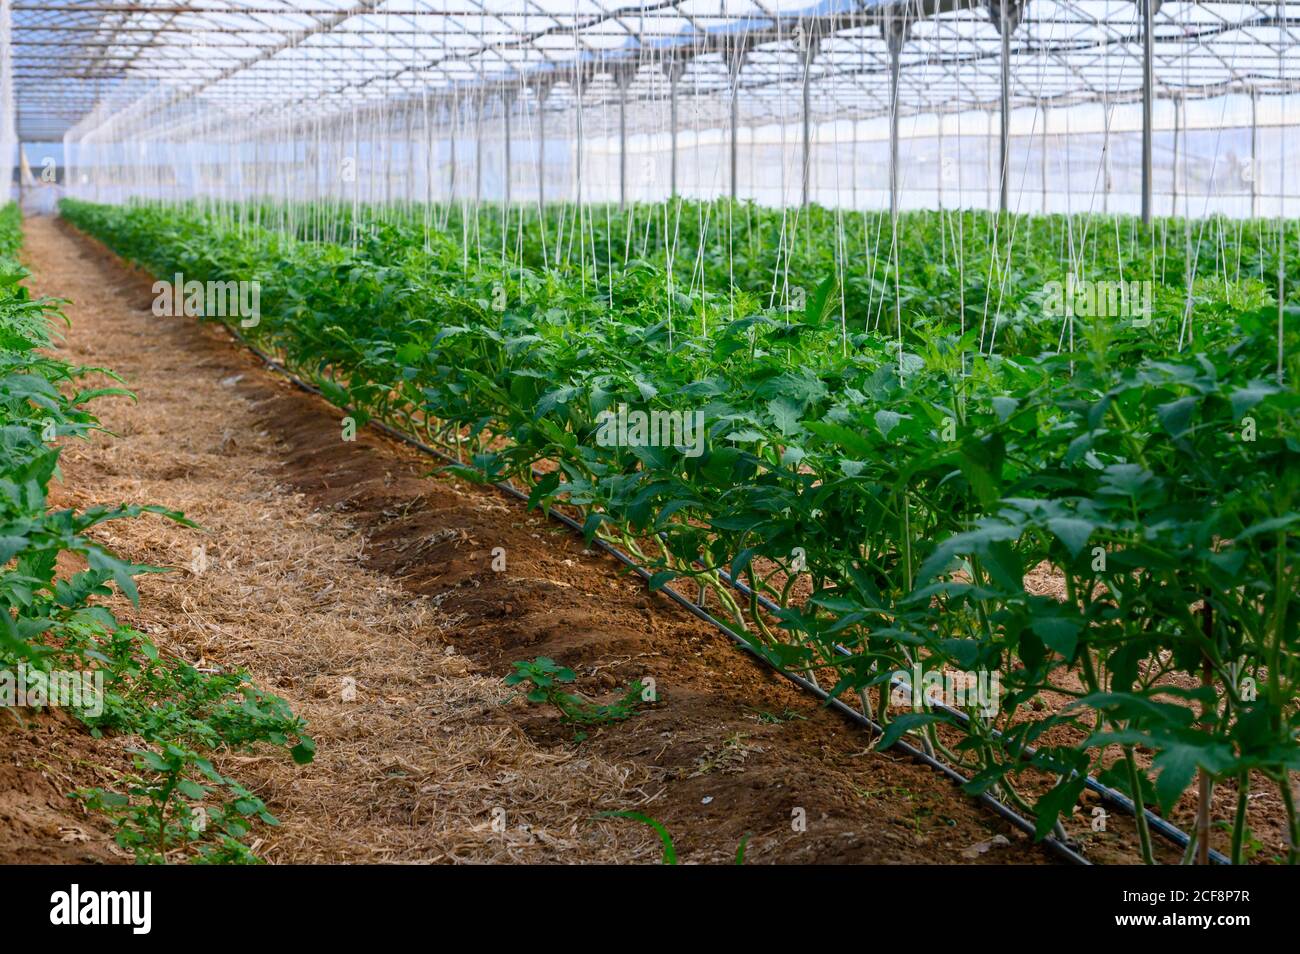 Anbau von Bio-Tomaten Pflanzen in Kunststoff-Gewächshäusern in Latium,  Italien Stockfotografie - Alamy